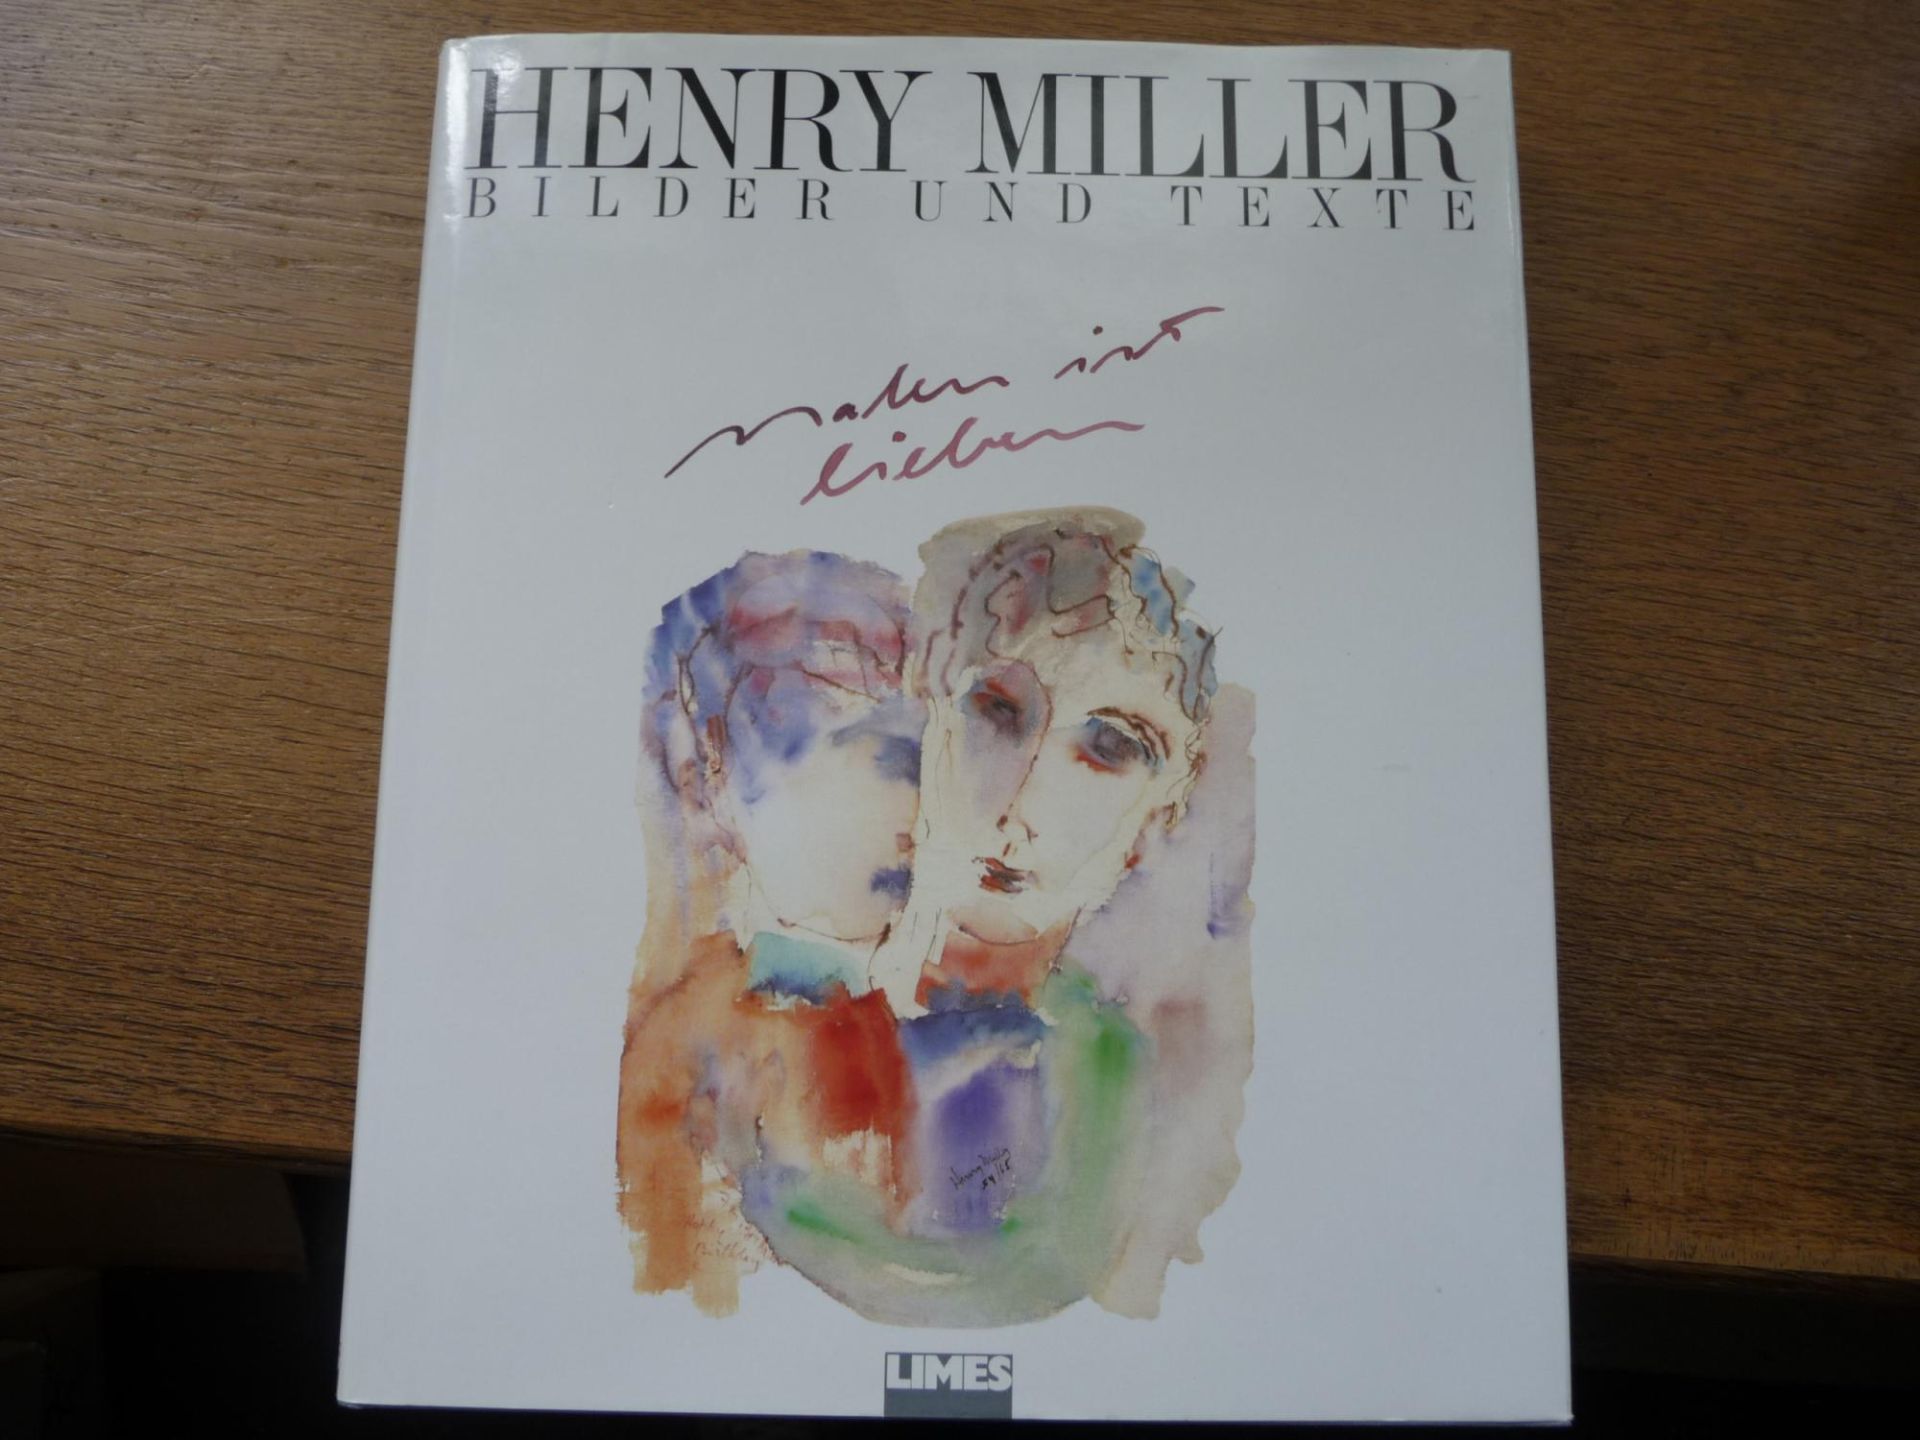 Henry Miller : Malen ist lieben ( Mit 4 Essays von Henry Miller) - Henry Miller, Malerei, Literatur, Essay, Aquarelle - Miller, Henry und Lawrence Durrell